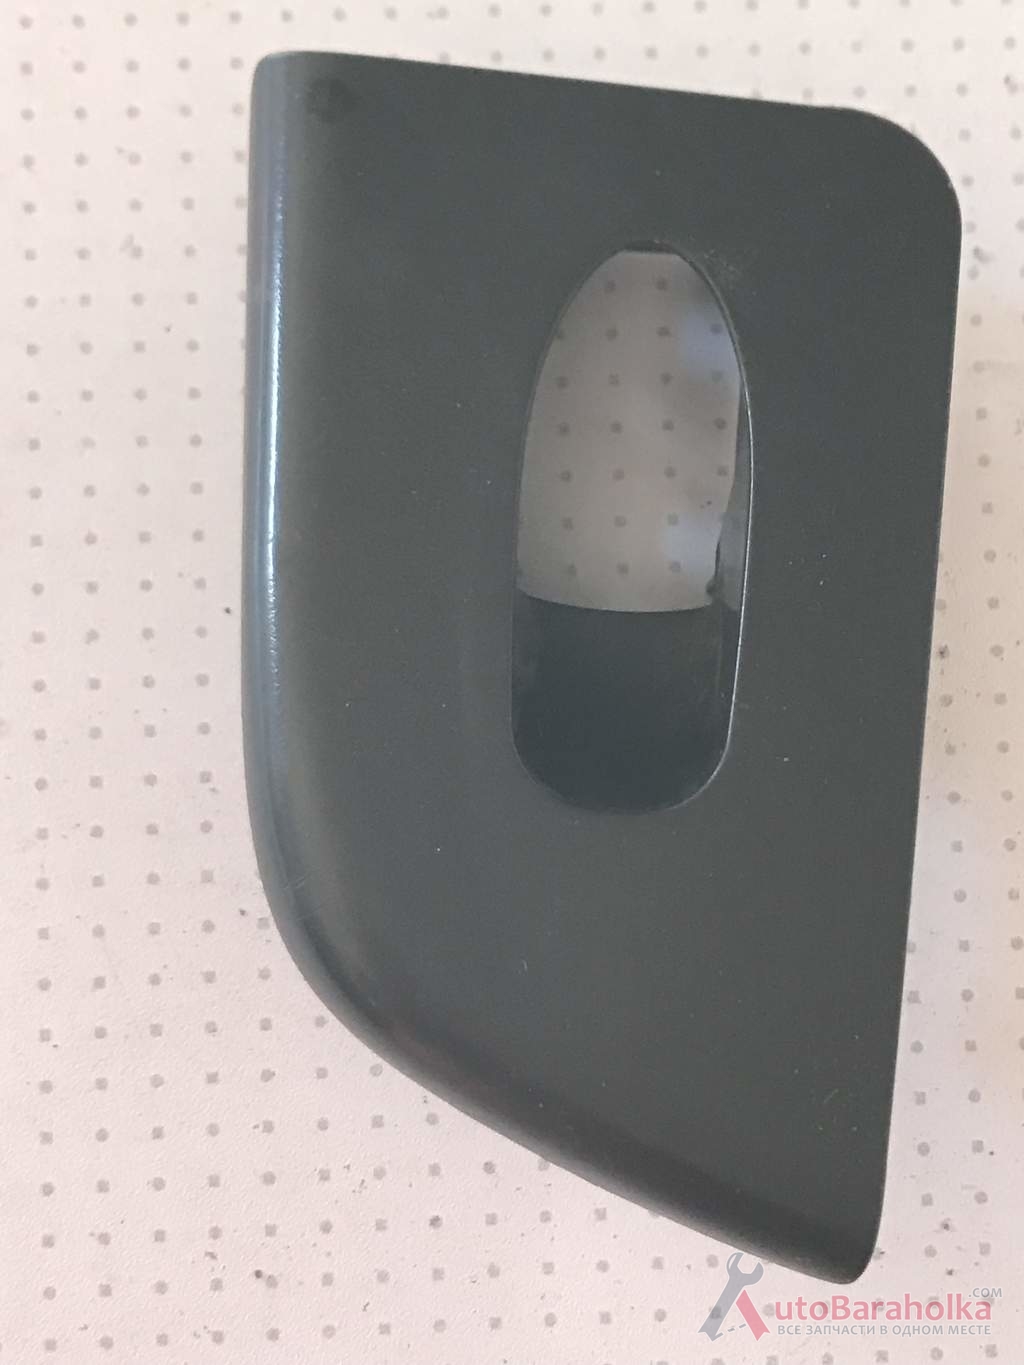 Продам Бу корпус кнопки стеклоподъемника Chery Jaggi S21-3746050, задней левой кировоград